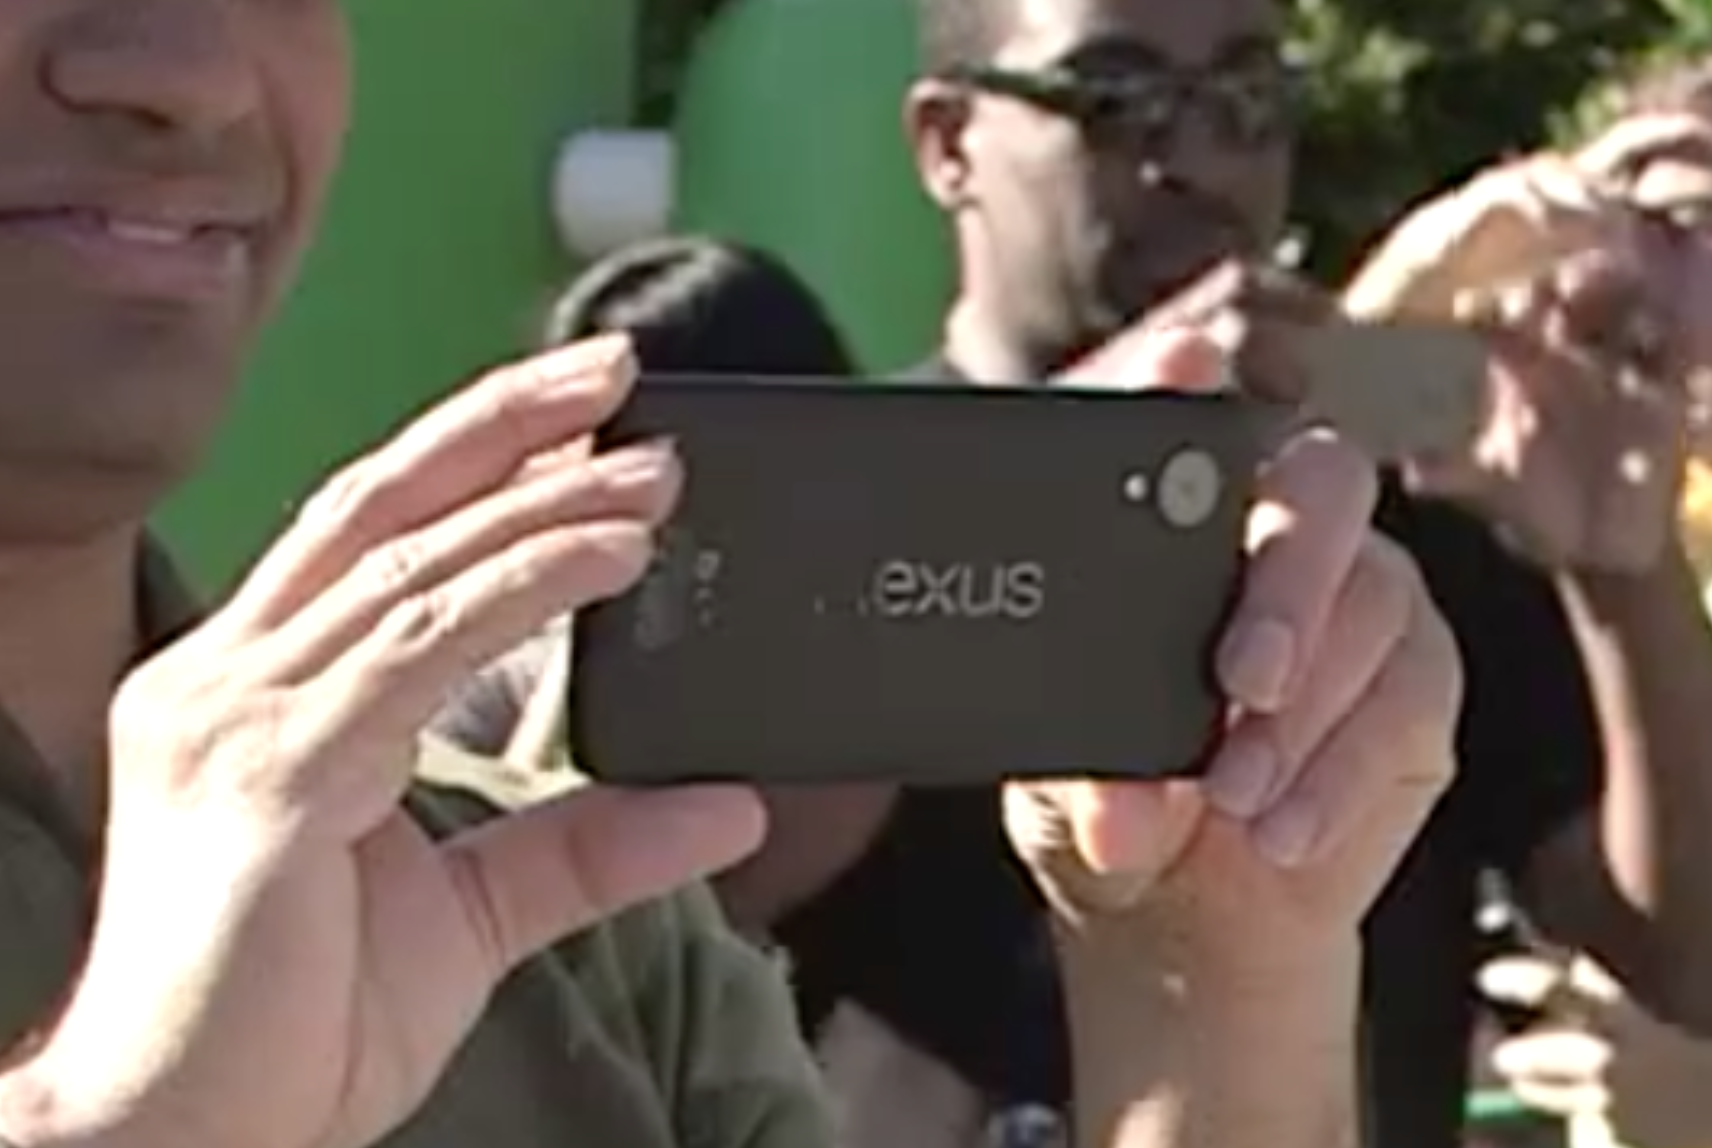 หลุดคลิปพรีวิว Nexus5 ตัวเป็นๆแบบครบทุกองศา พร้อมโชว์การรัน Android 4.4.